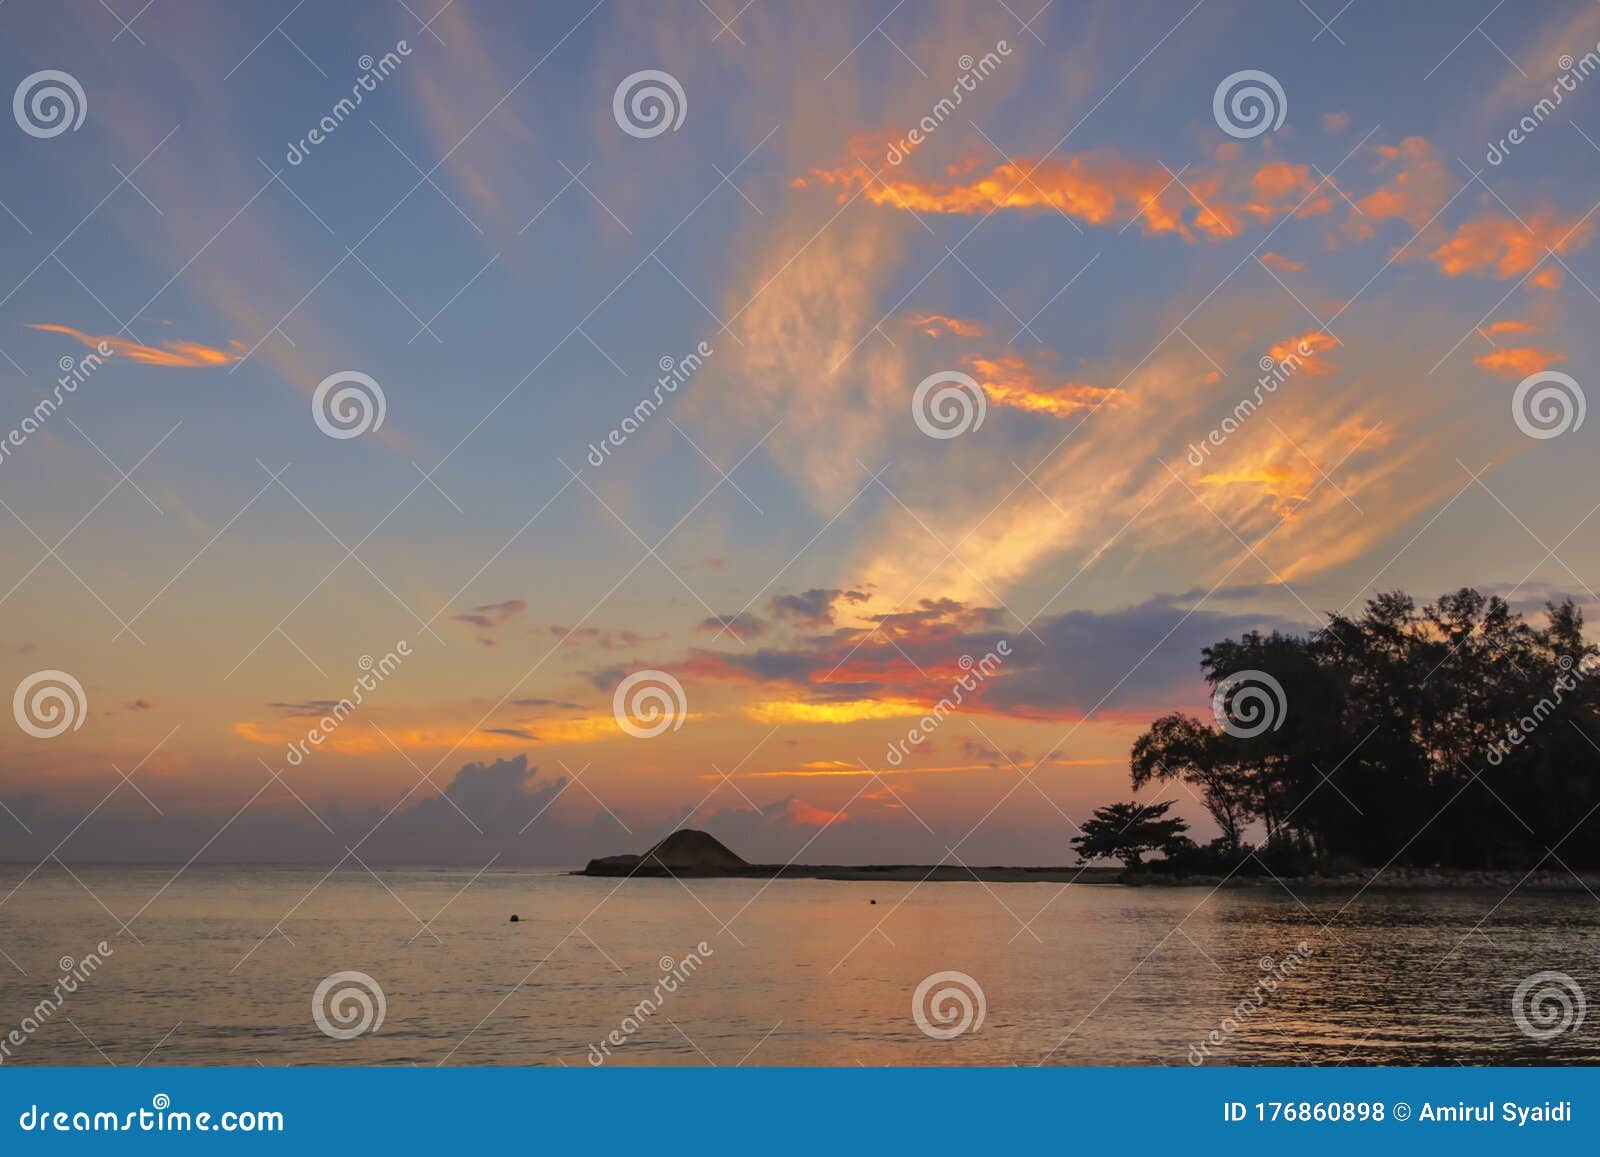 scenery sunrise surrounding kuala ibai beach located in terengganu, malaysia